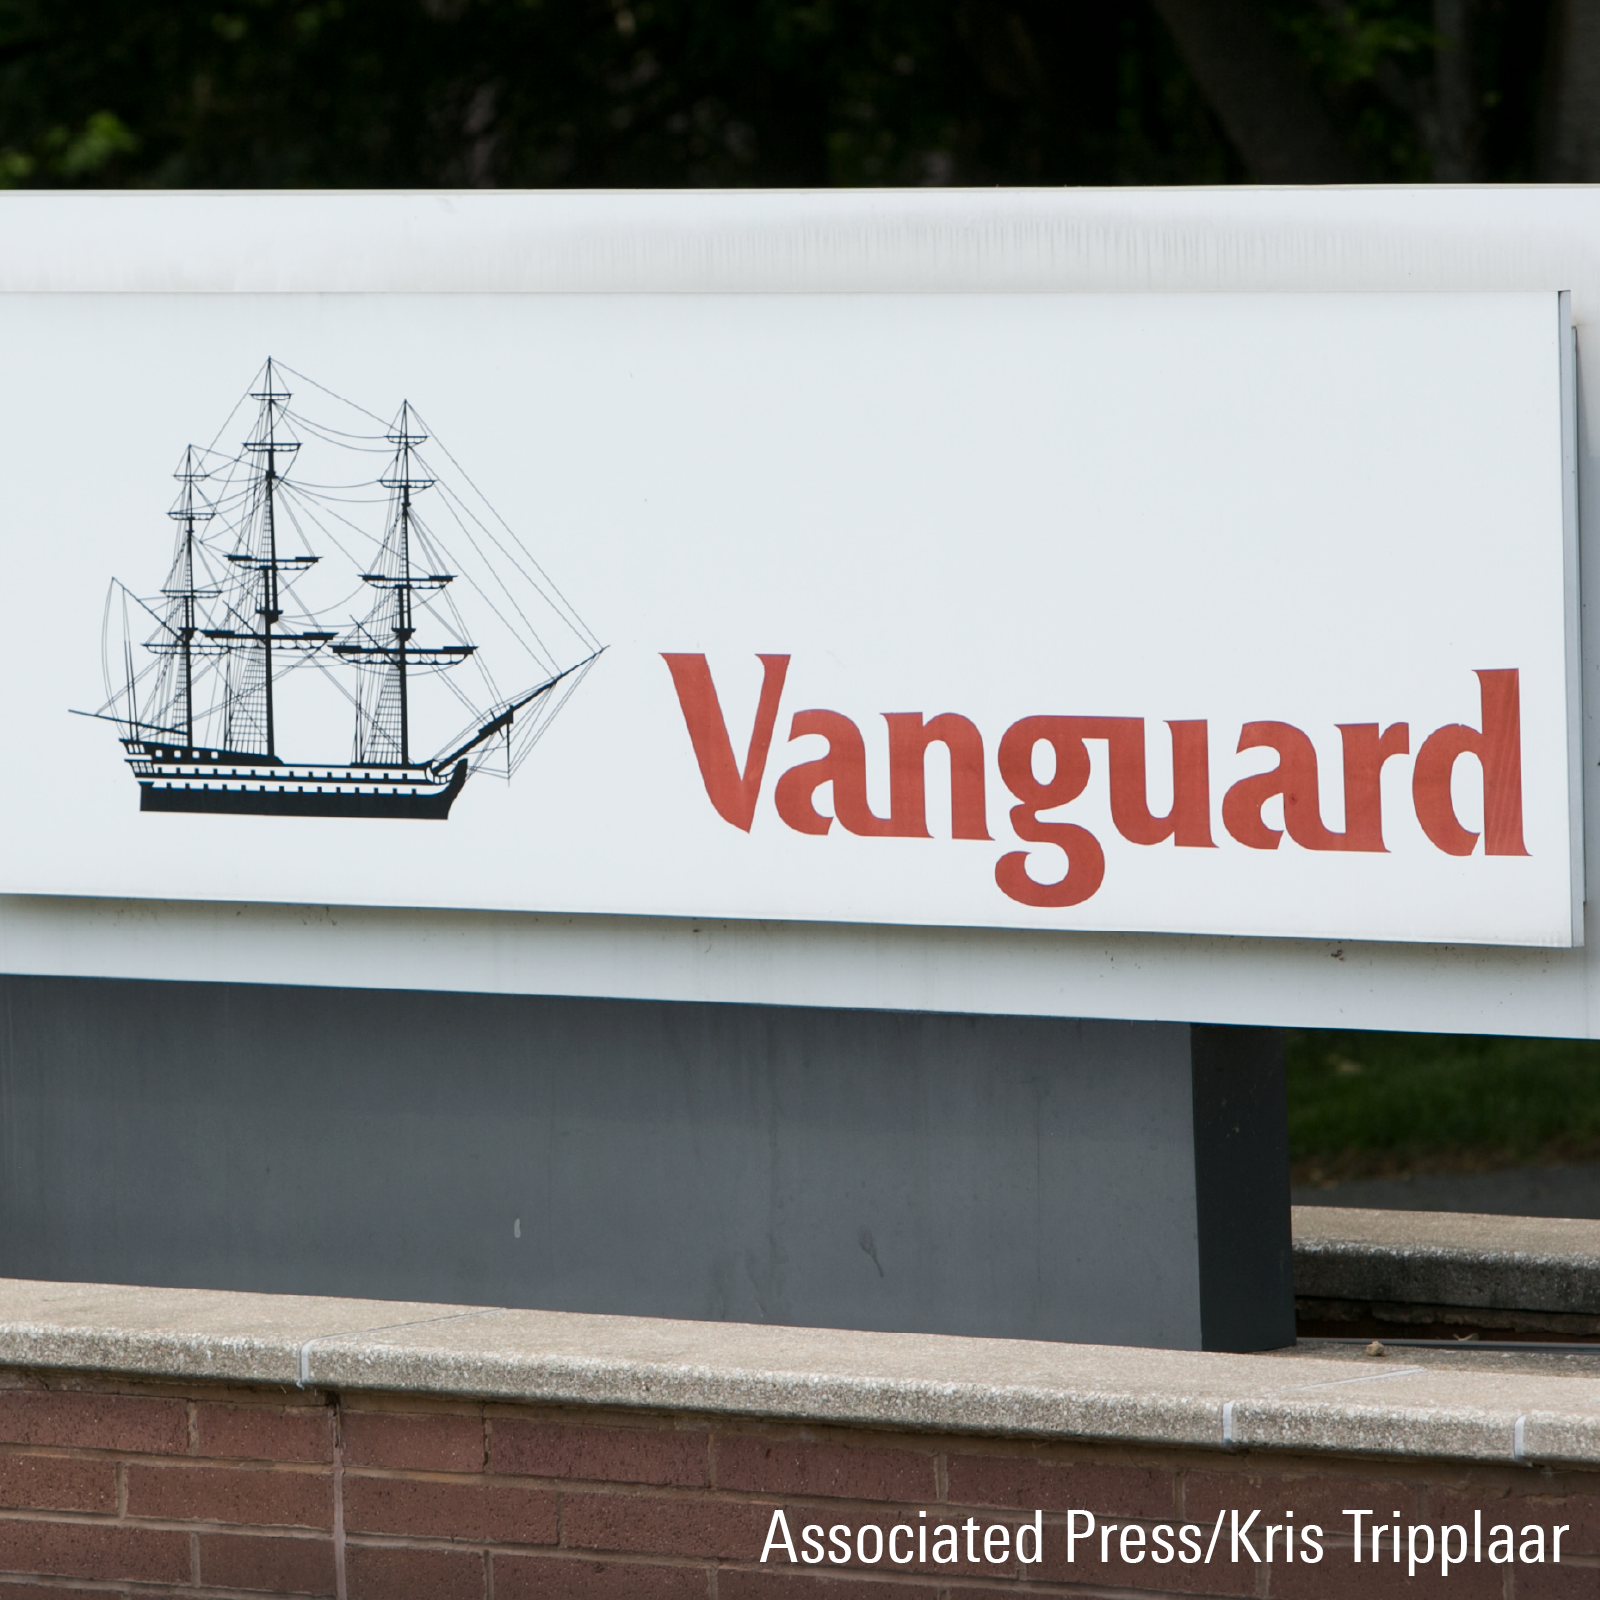 Vanguard CEO Tim Buckley to Retire